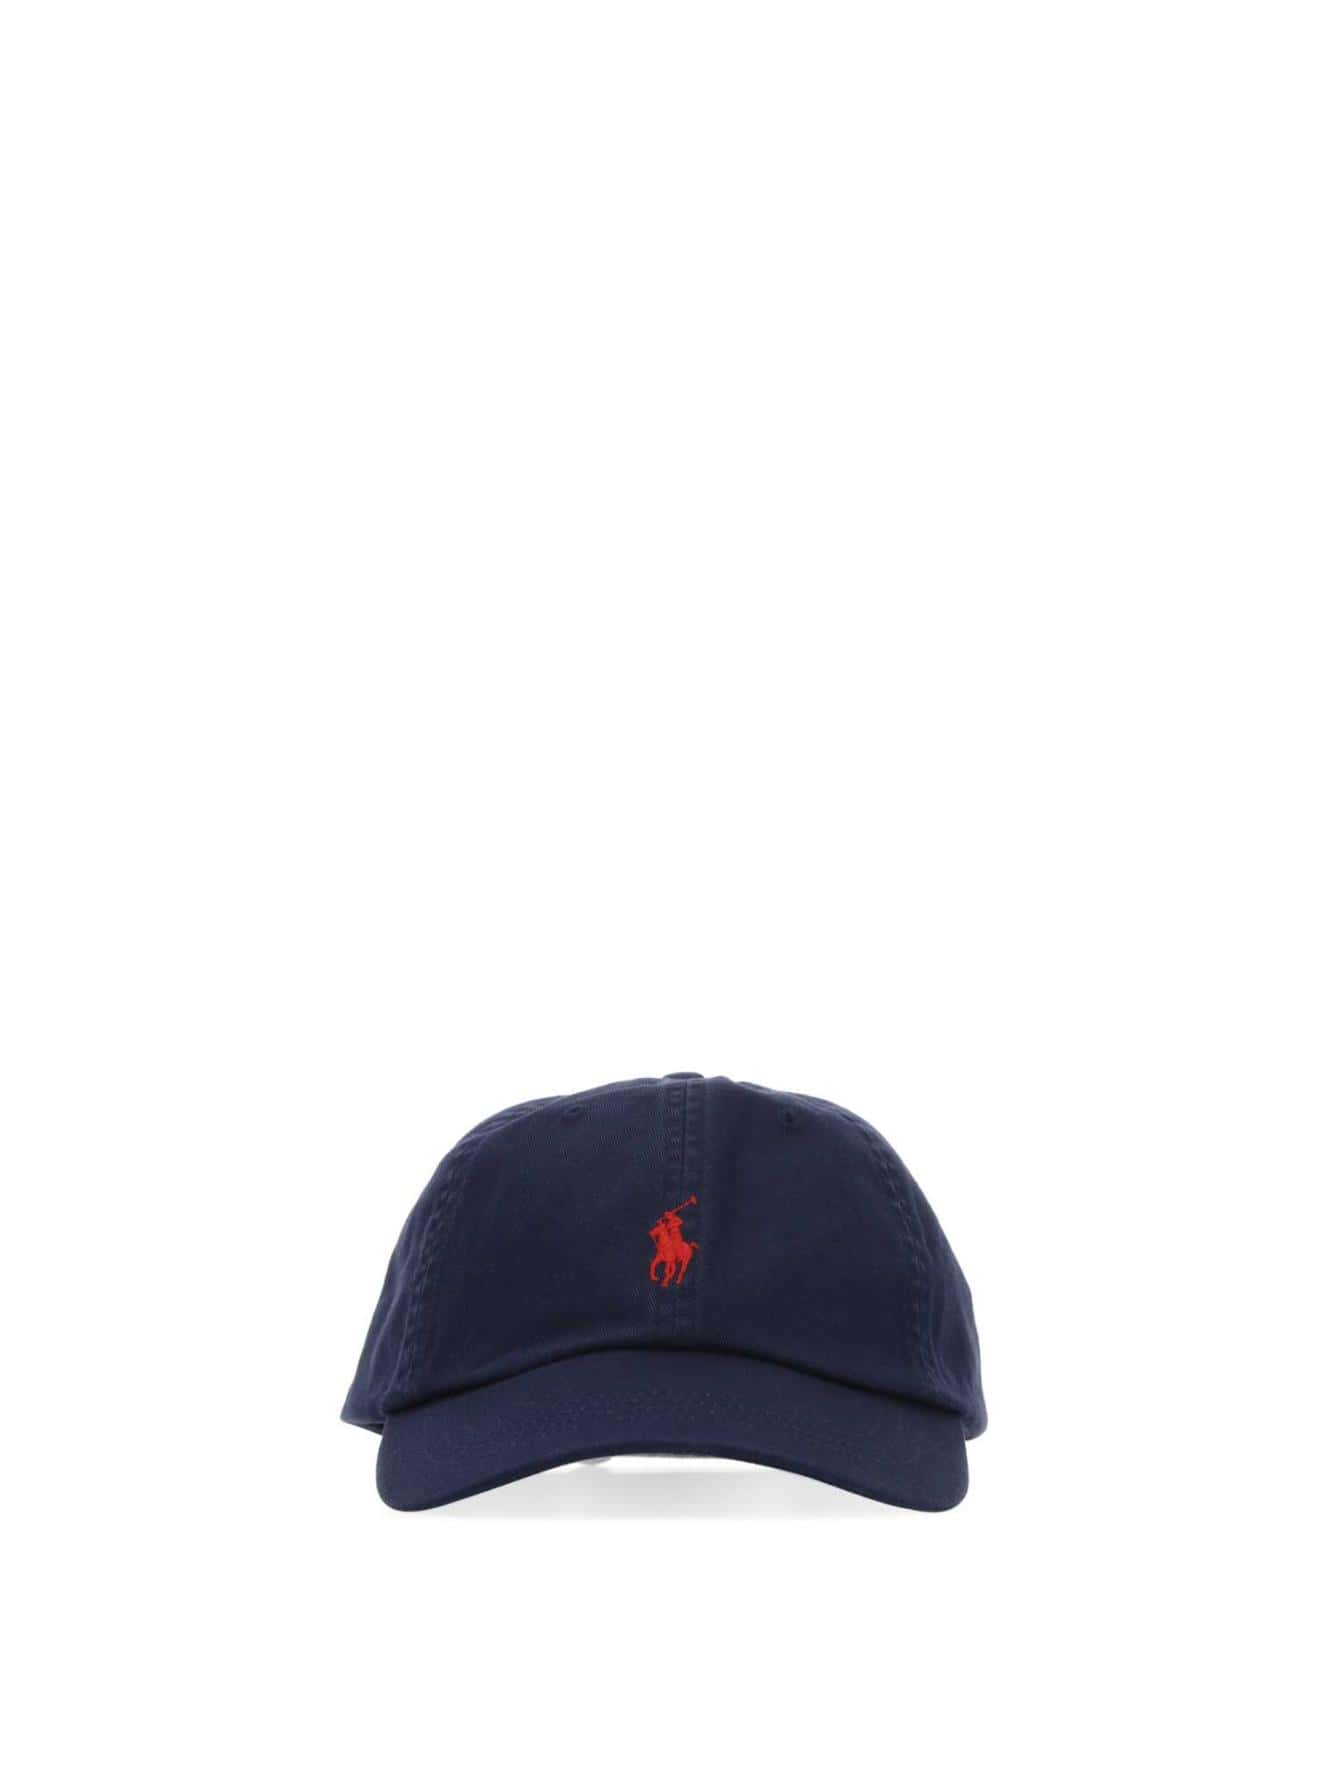 Мужские шапки Polo Ralph Lauren СИНИЕ 710548524014, синий